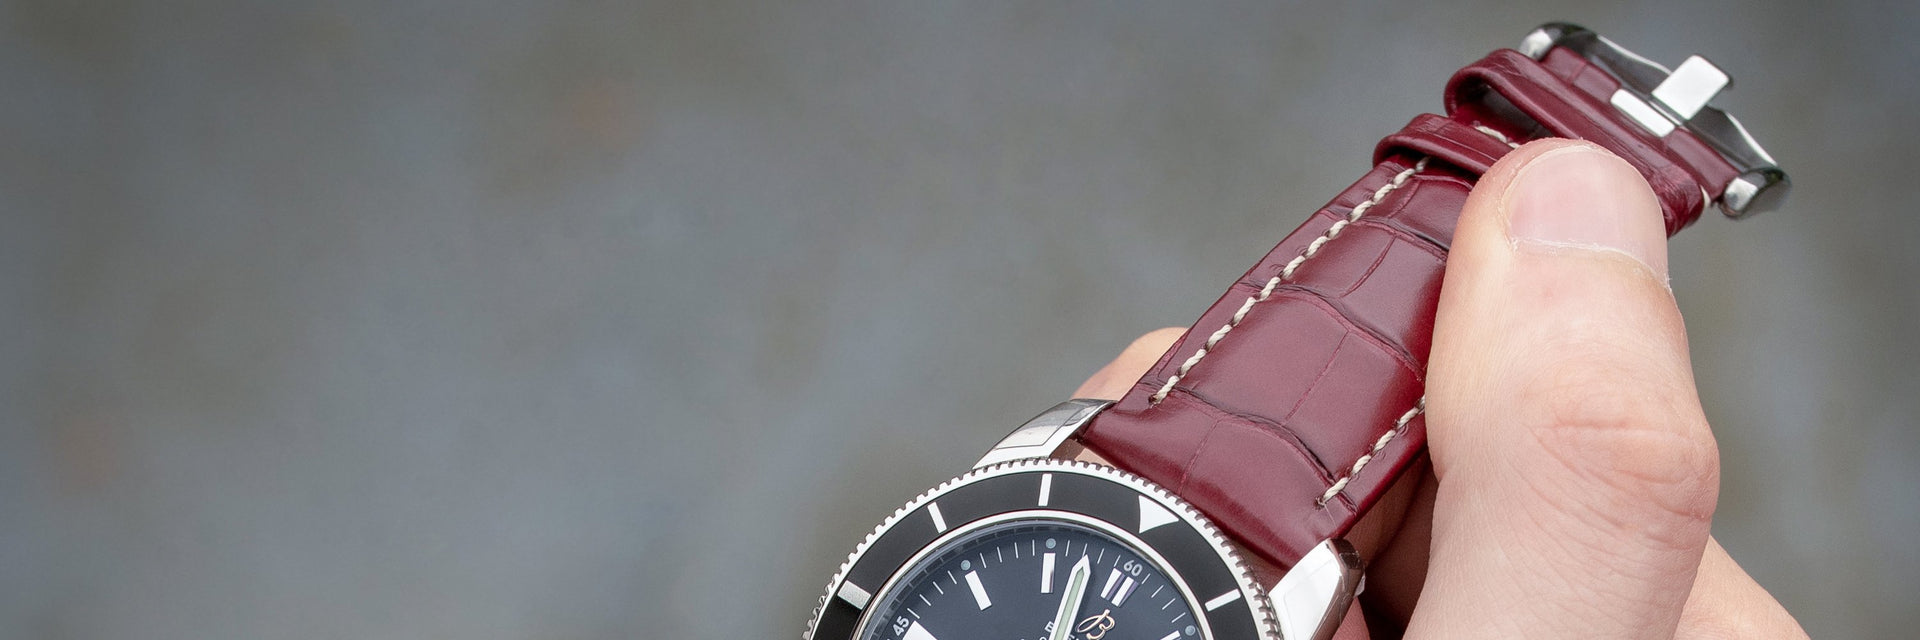 burgundy watch straps